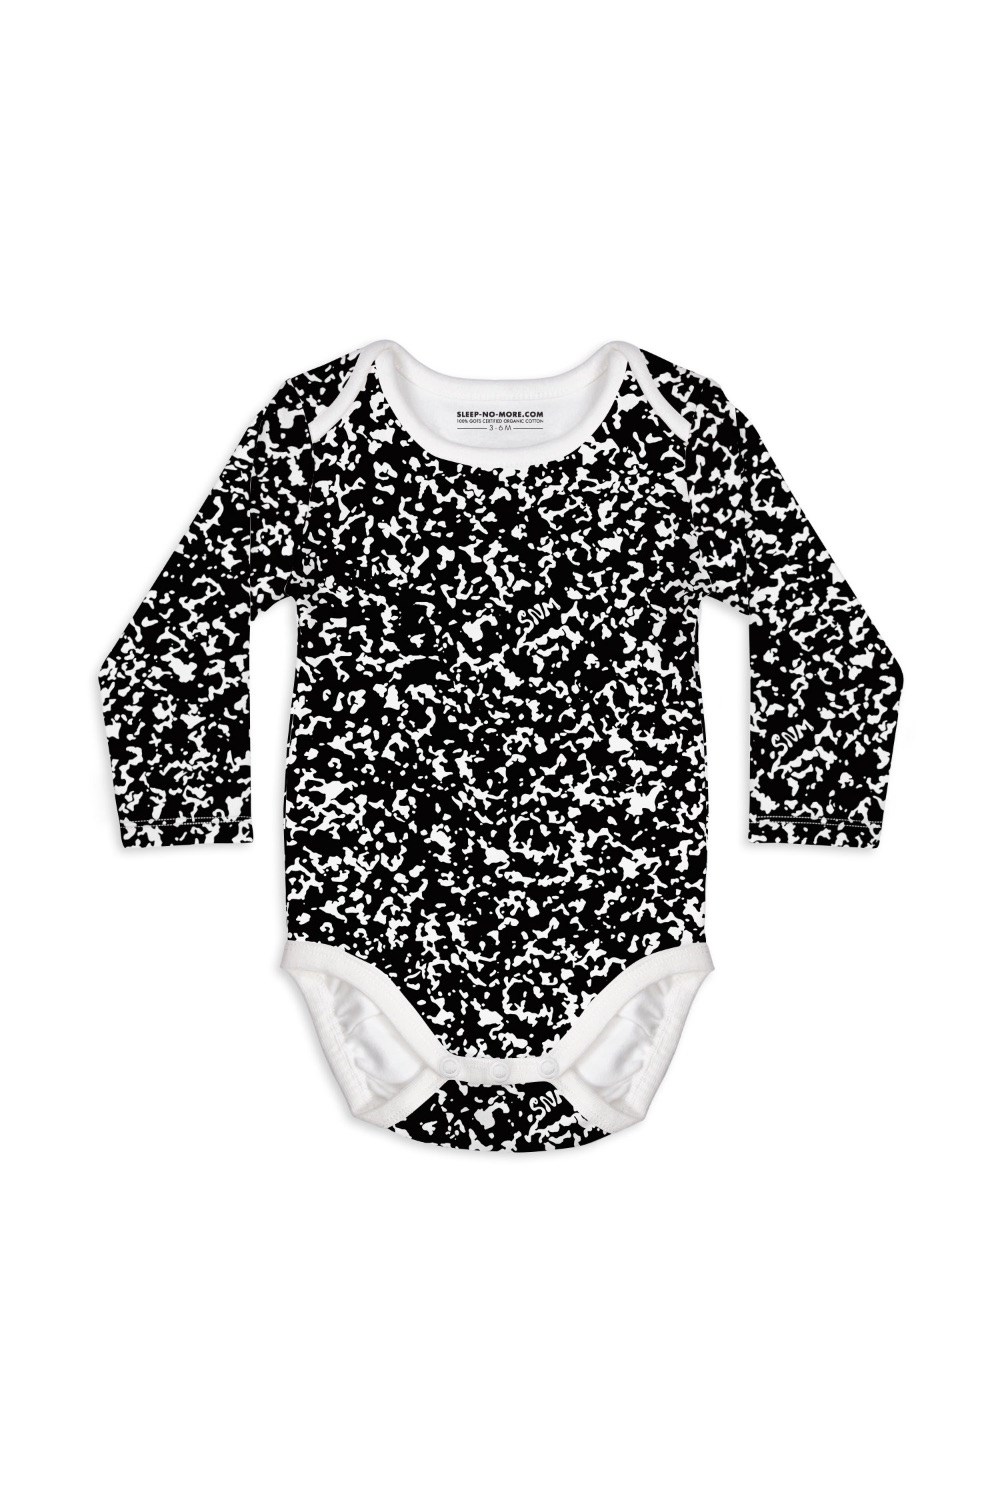 Too Cool For School Baby Bodysuit -